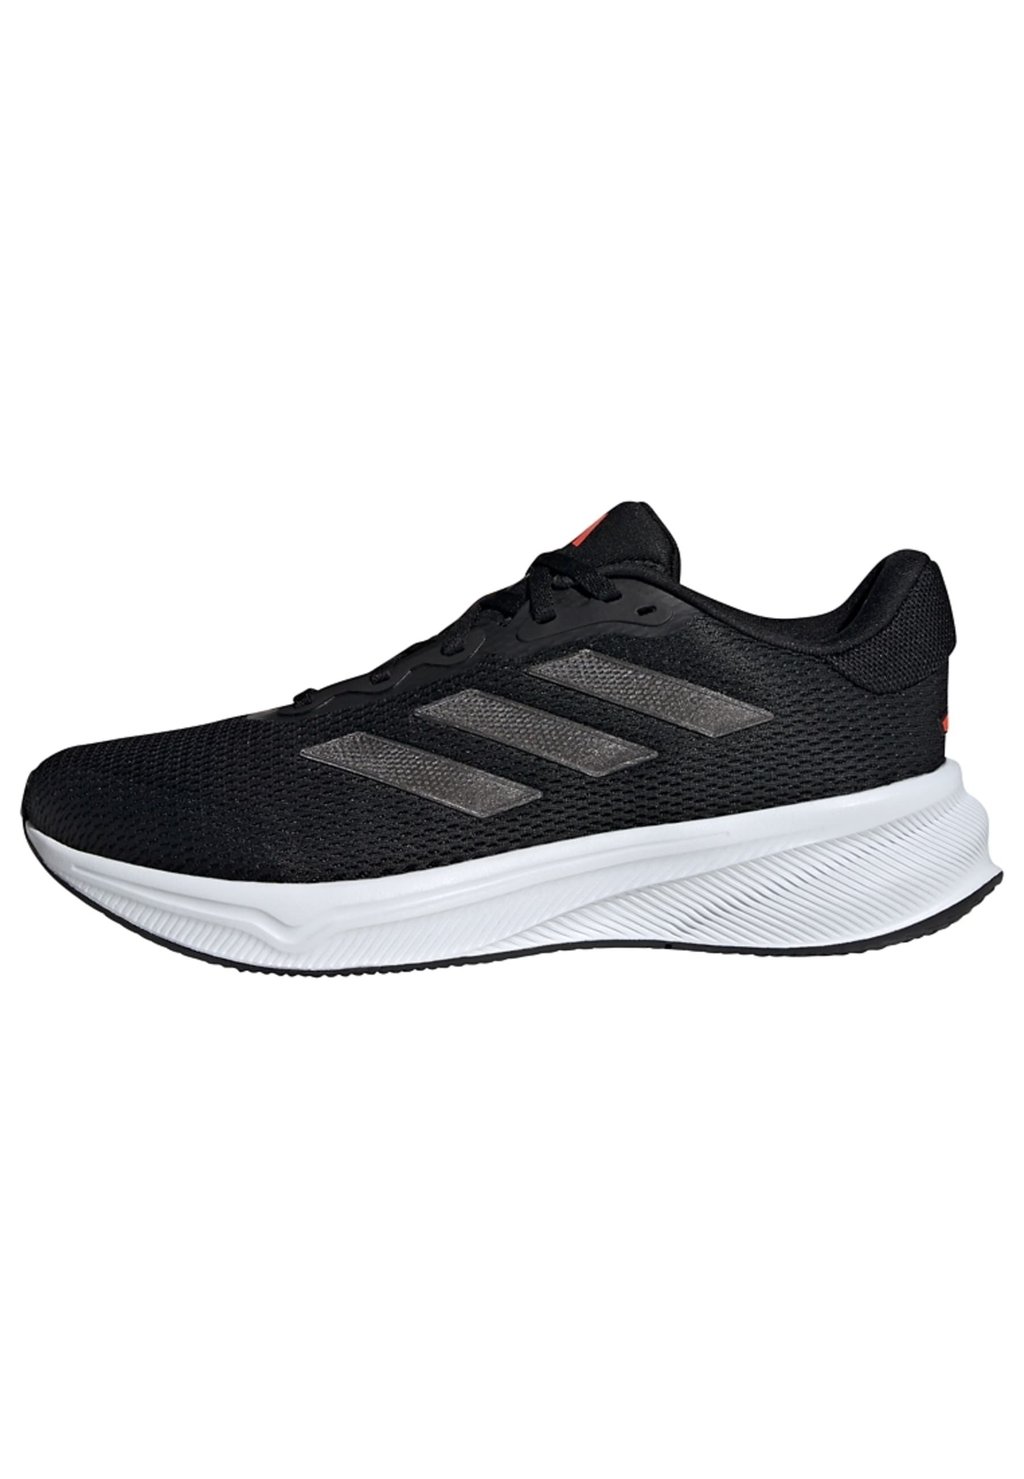 Стабильные кроссовки Adidas, основной черный карбоновый солнечный красный